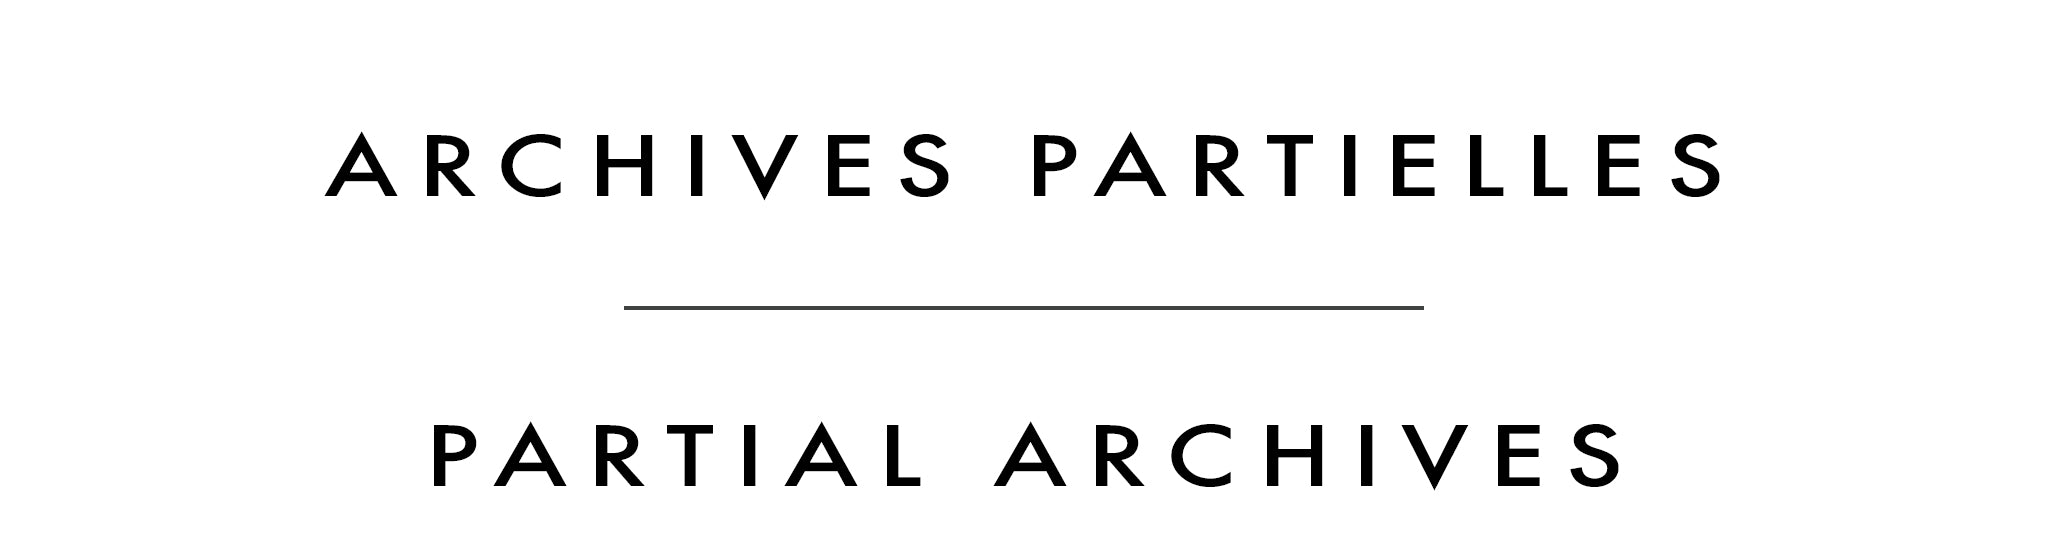 Archives partielles | Partial Archives | Pei Yang